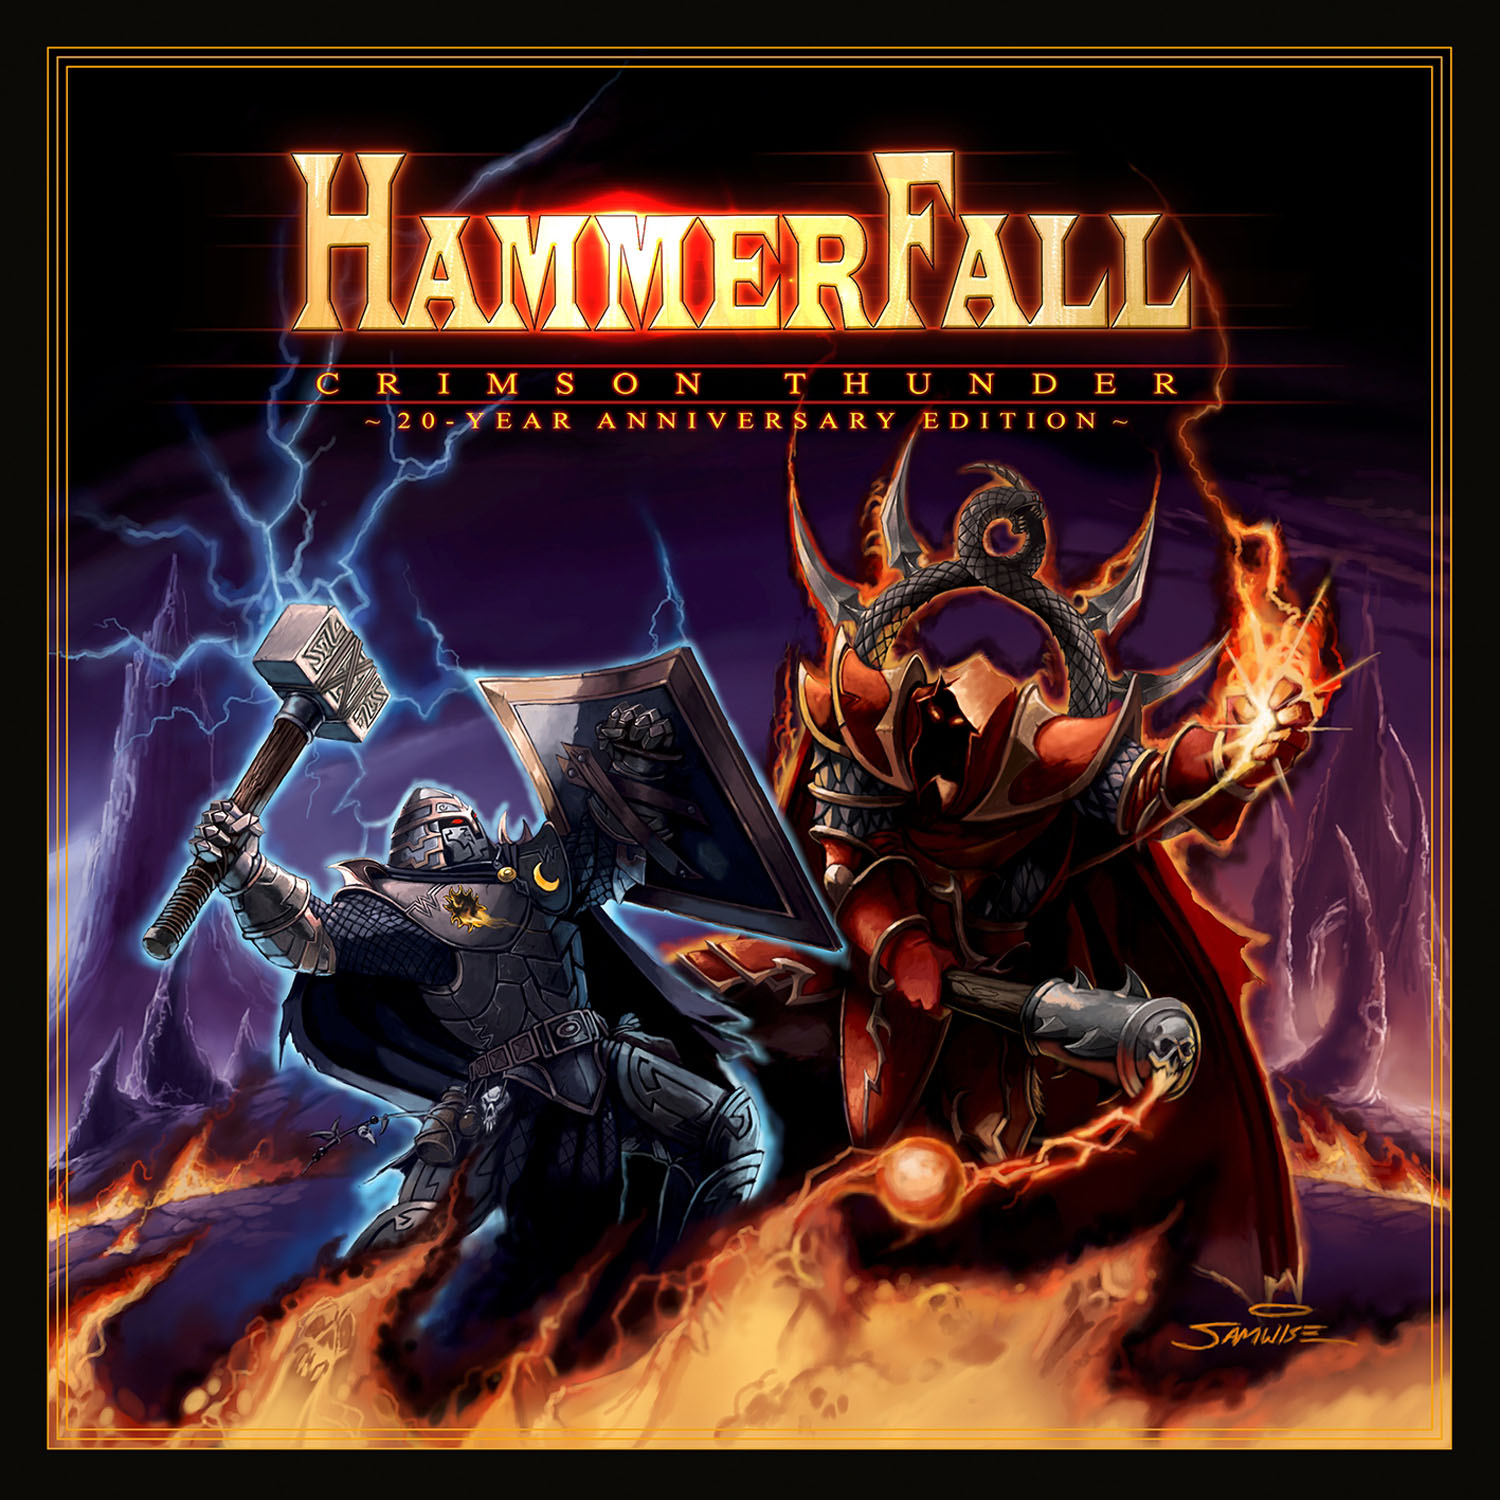 Hammerfall - Crimson Thunder 20 Year Anniversary Edition - Artwork